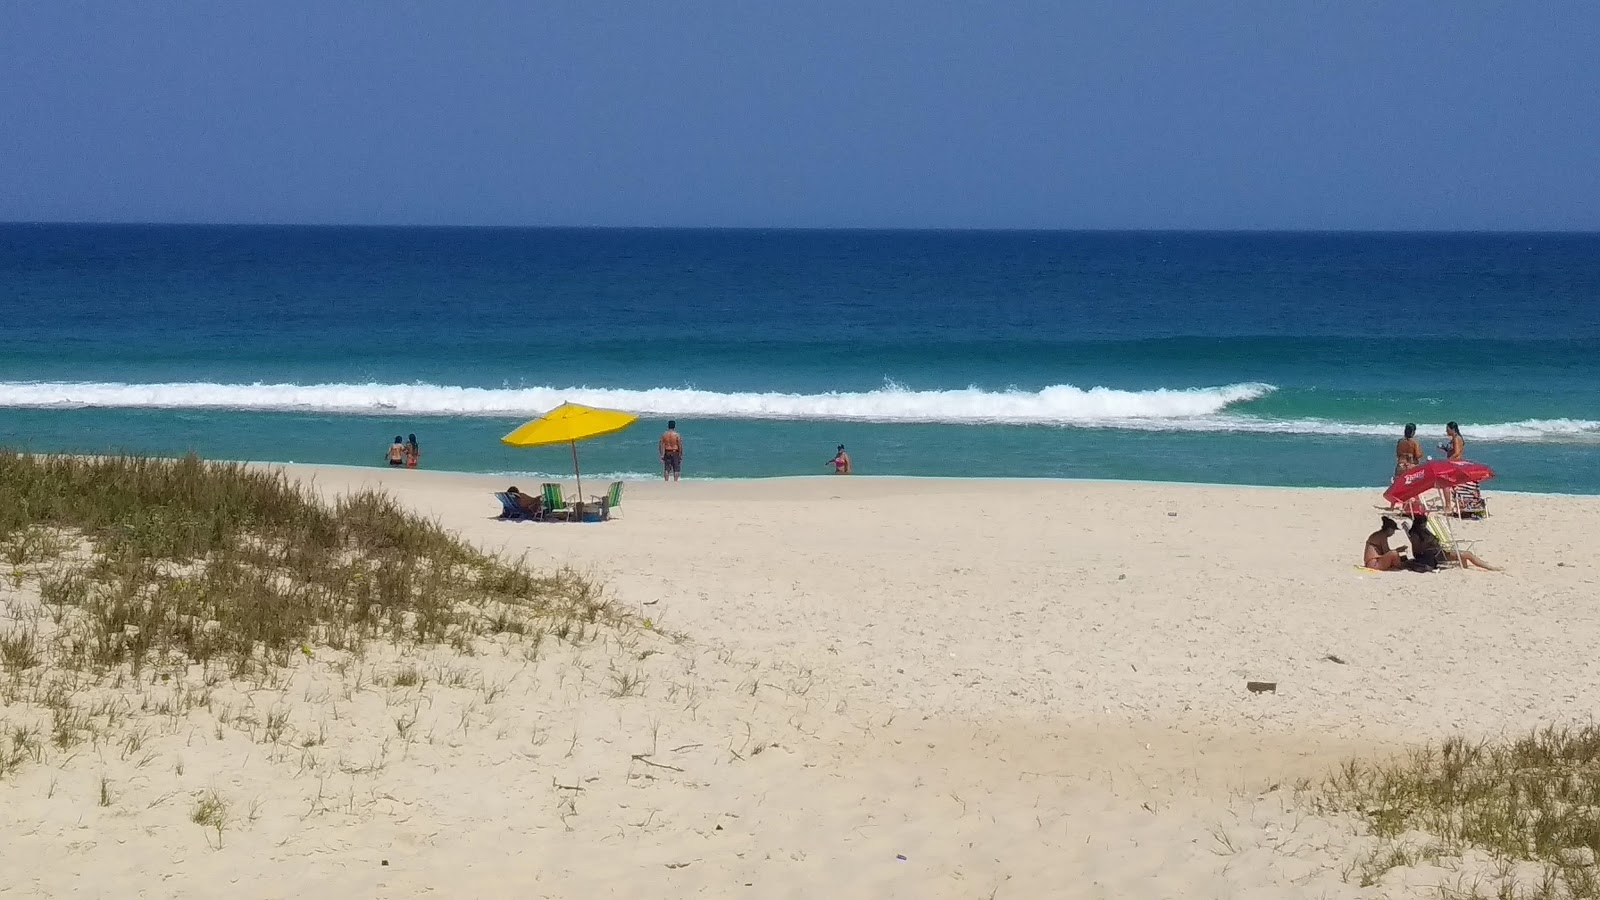 Praia do Dentinho'in fotoğrafı beyaz ince kum yüzey ile